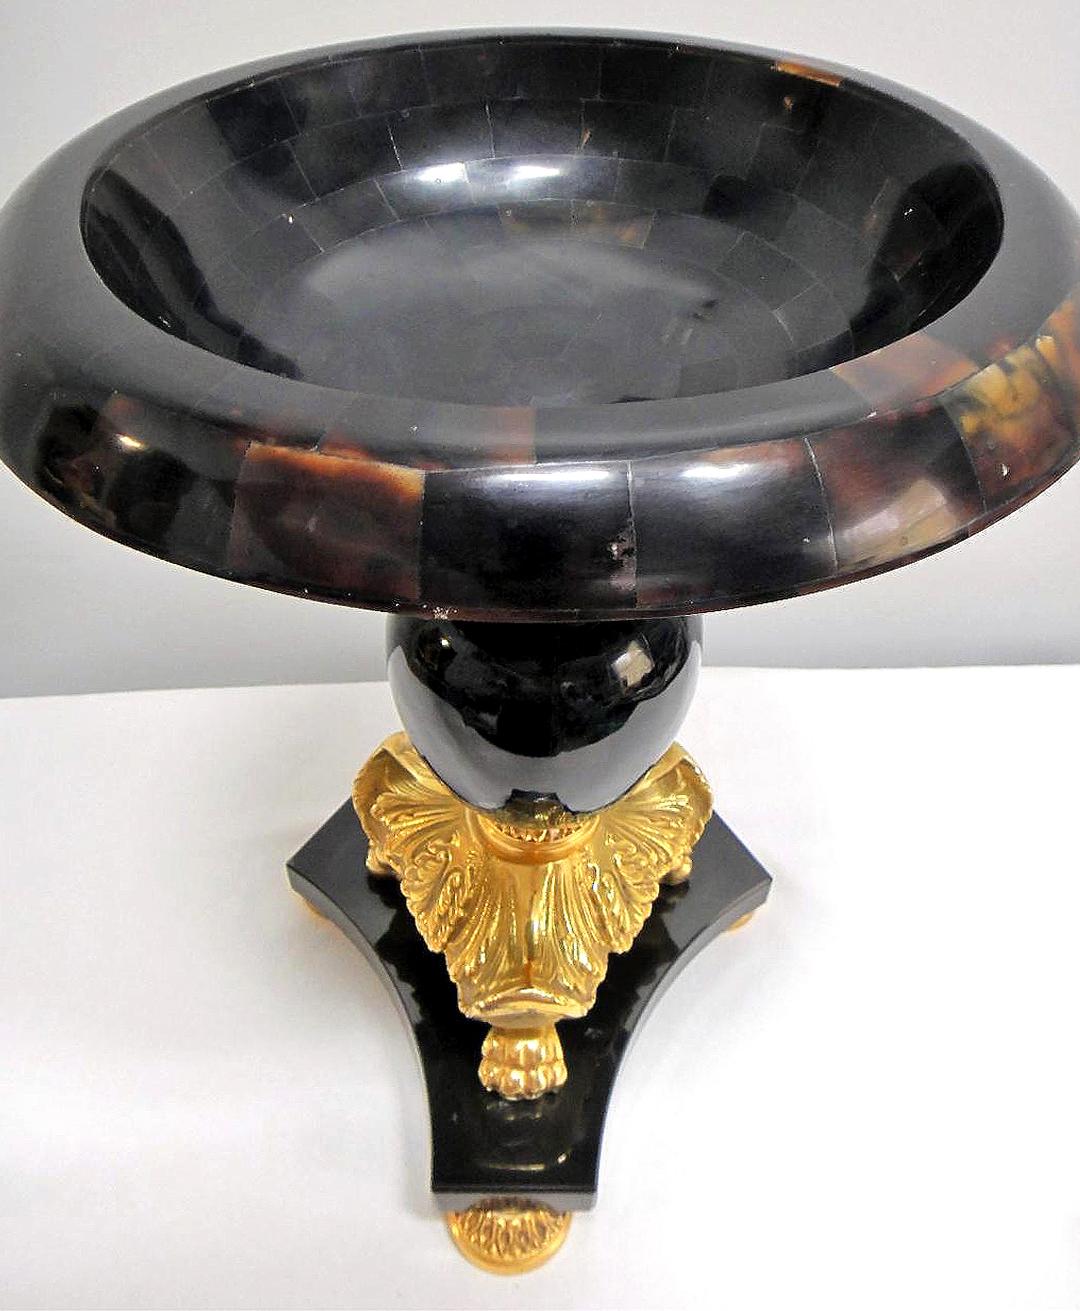 Laudarte Srl Oversale Urne aus Marmor, Bronze und Horn, Italien

Zum Verkauf angeboten wird eine stattliche Urne aus Marmor und Bronze mit einem Mosaik Horn oben von Laudarte Srl. Die Urne ist fein gearbeitet und weist an der Unterseite